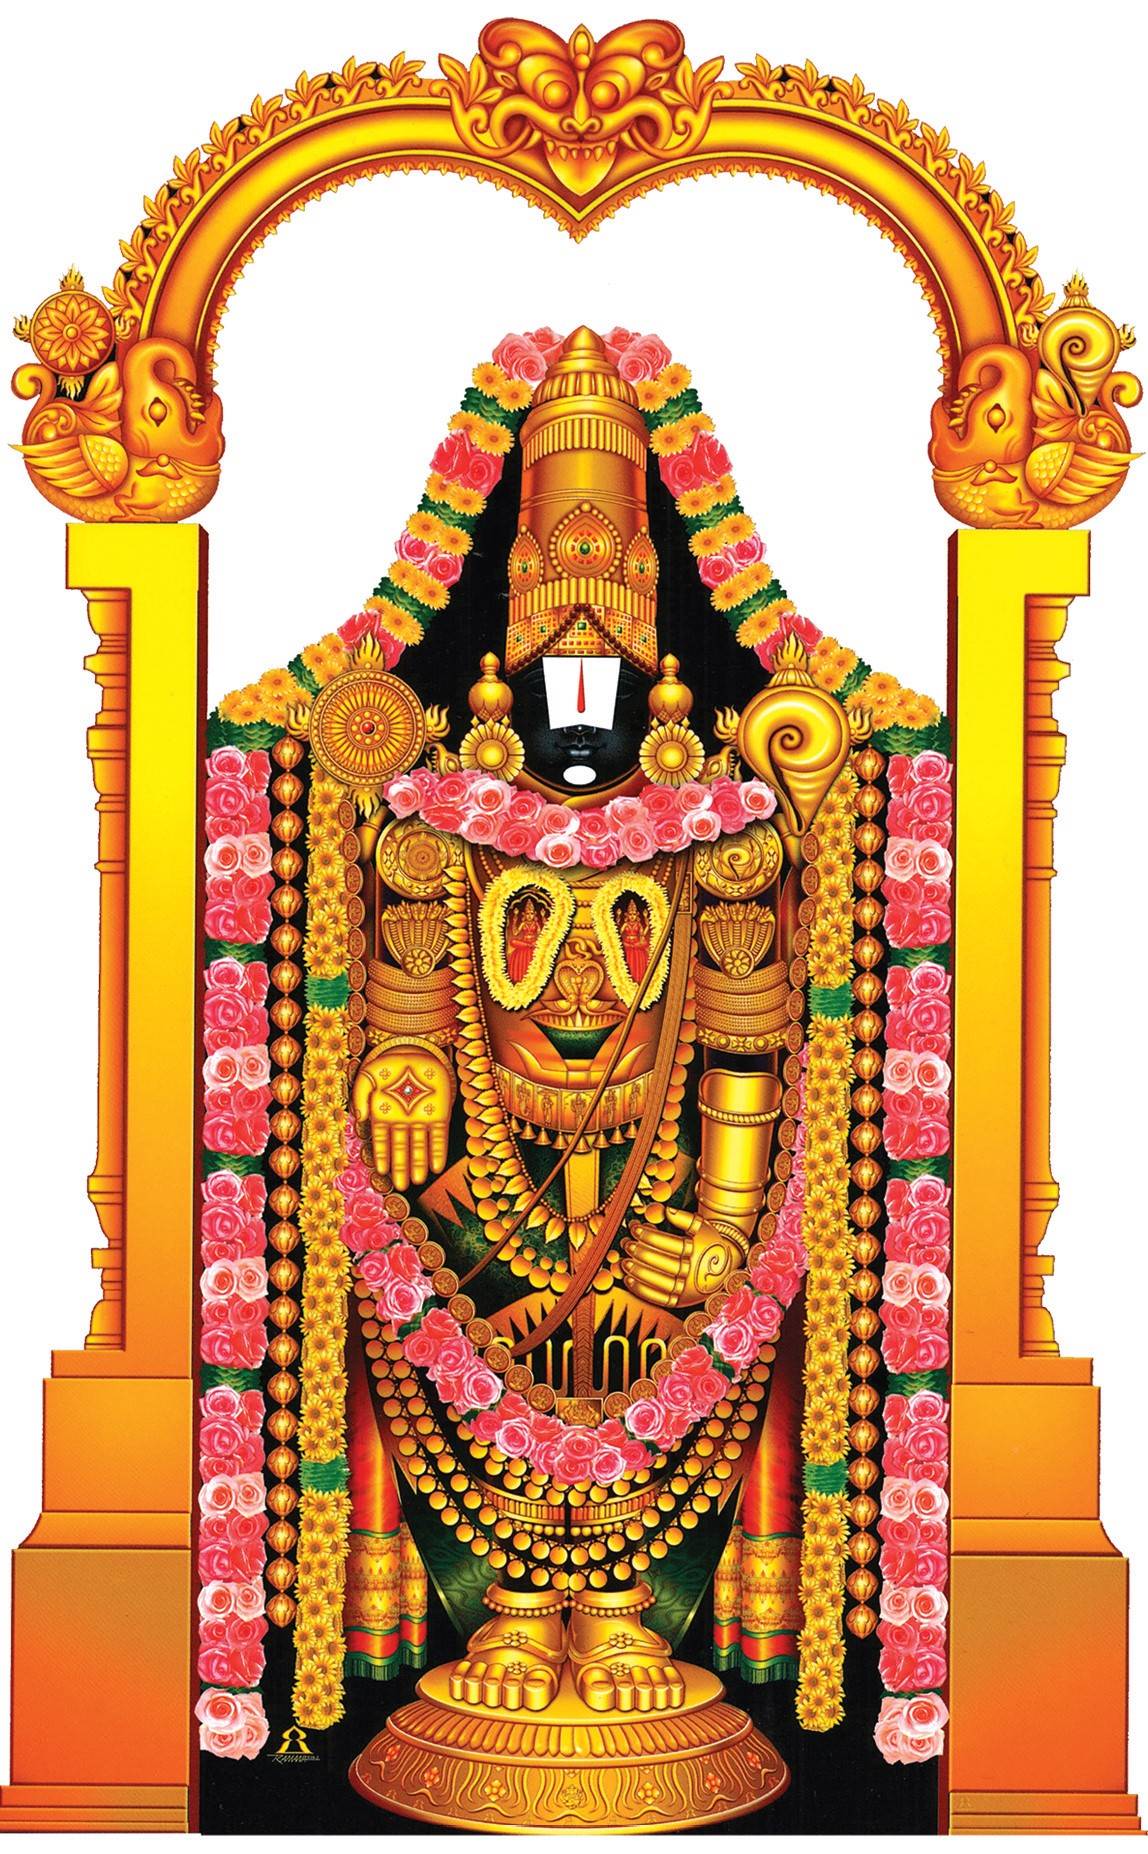 Vakshasthala Lakshmi on Srinivasa